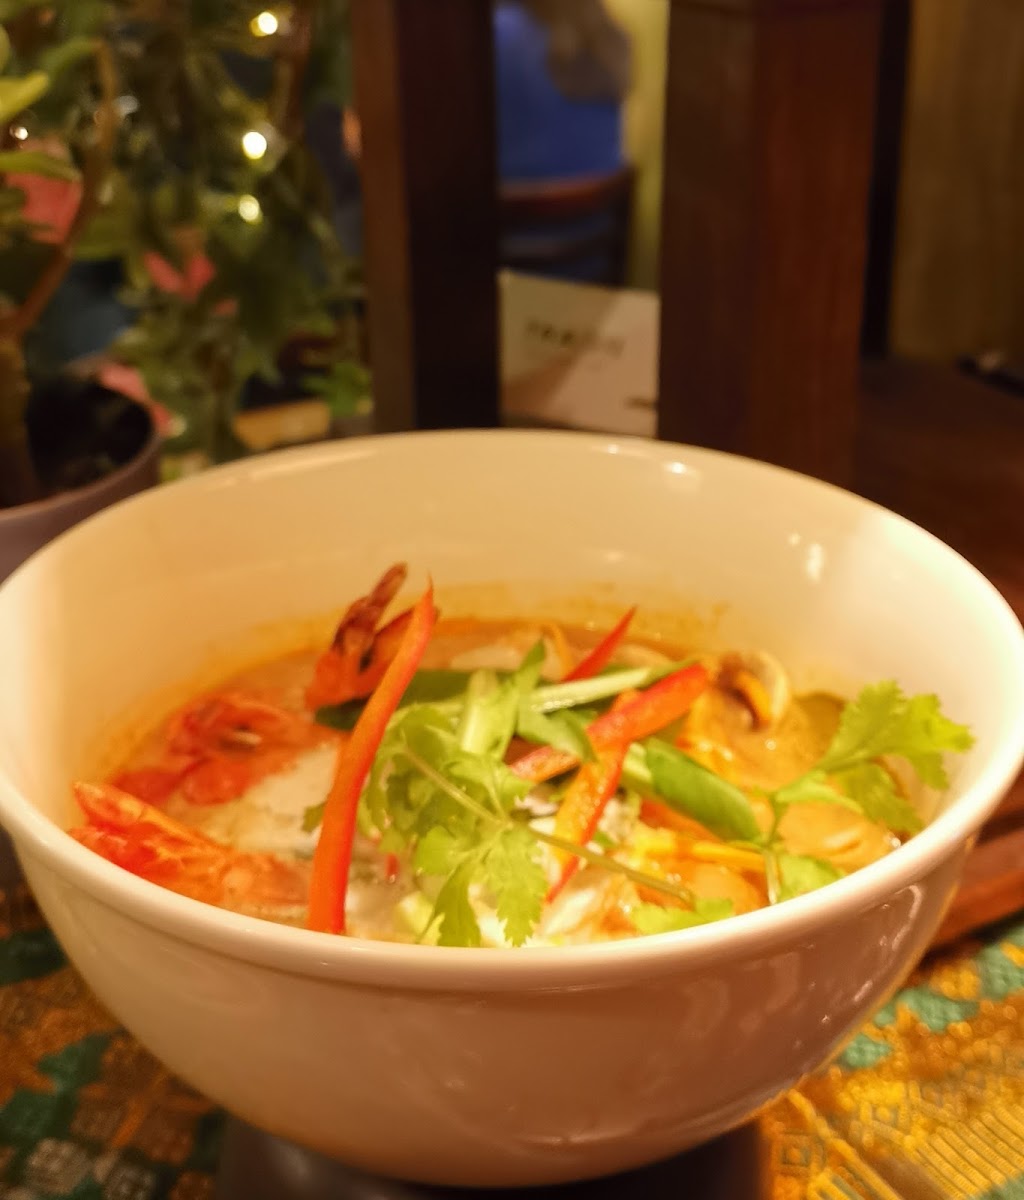 Tom Yum Goong soup